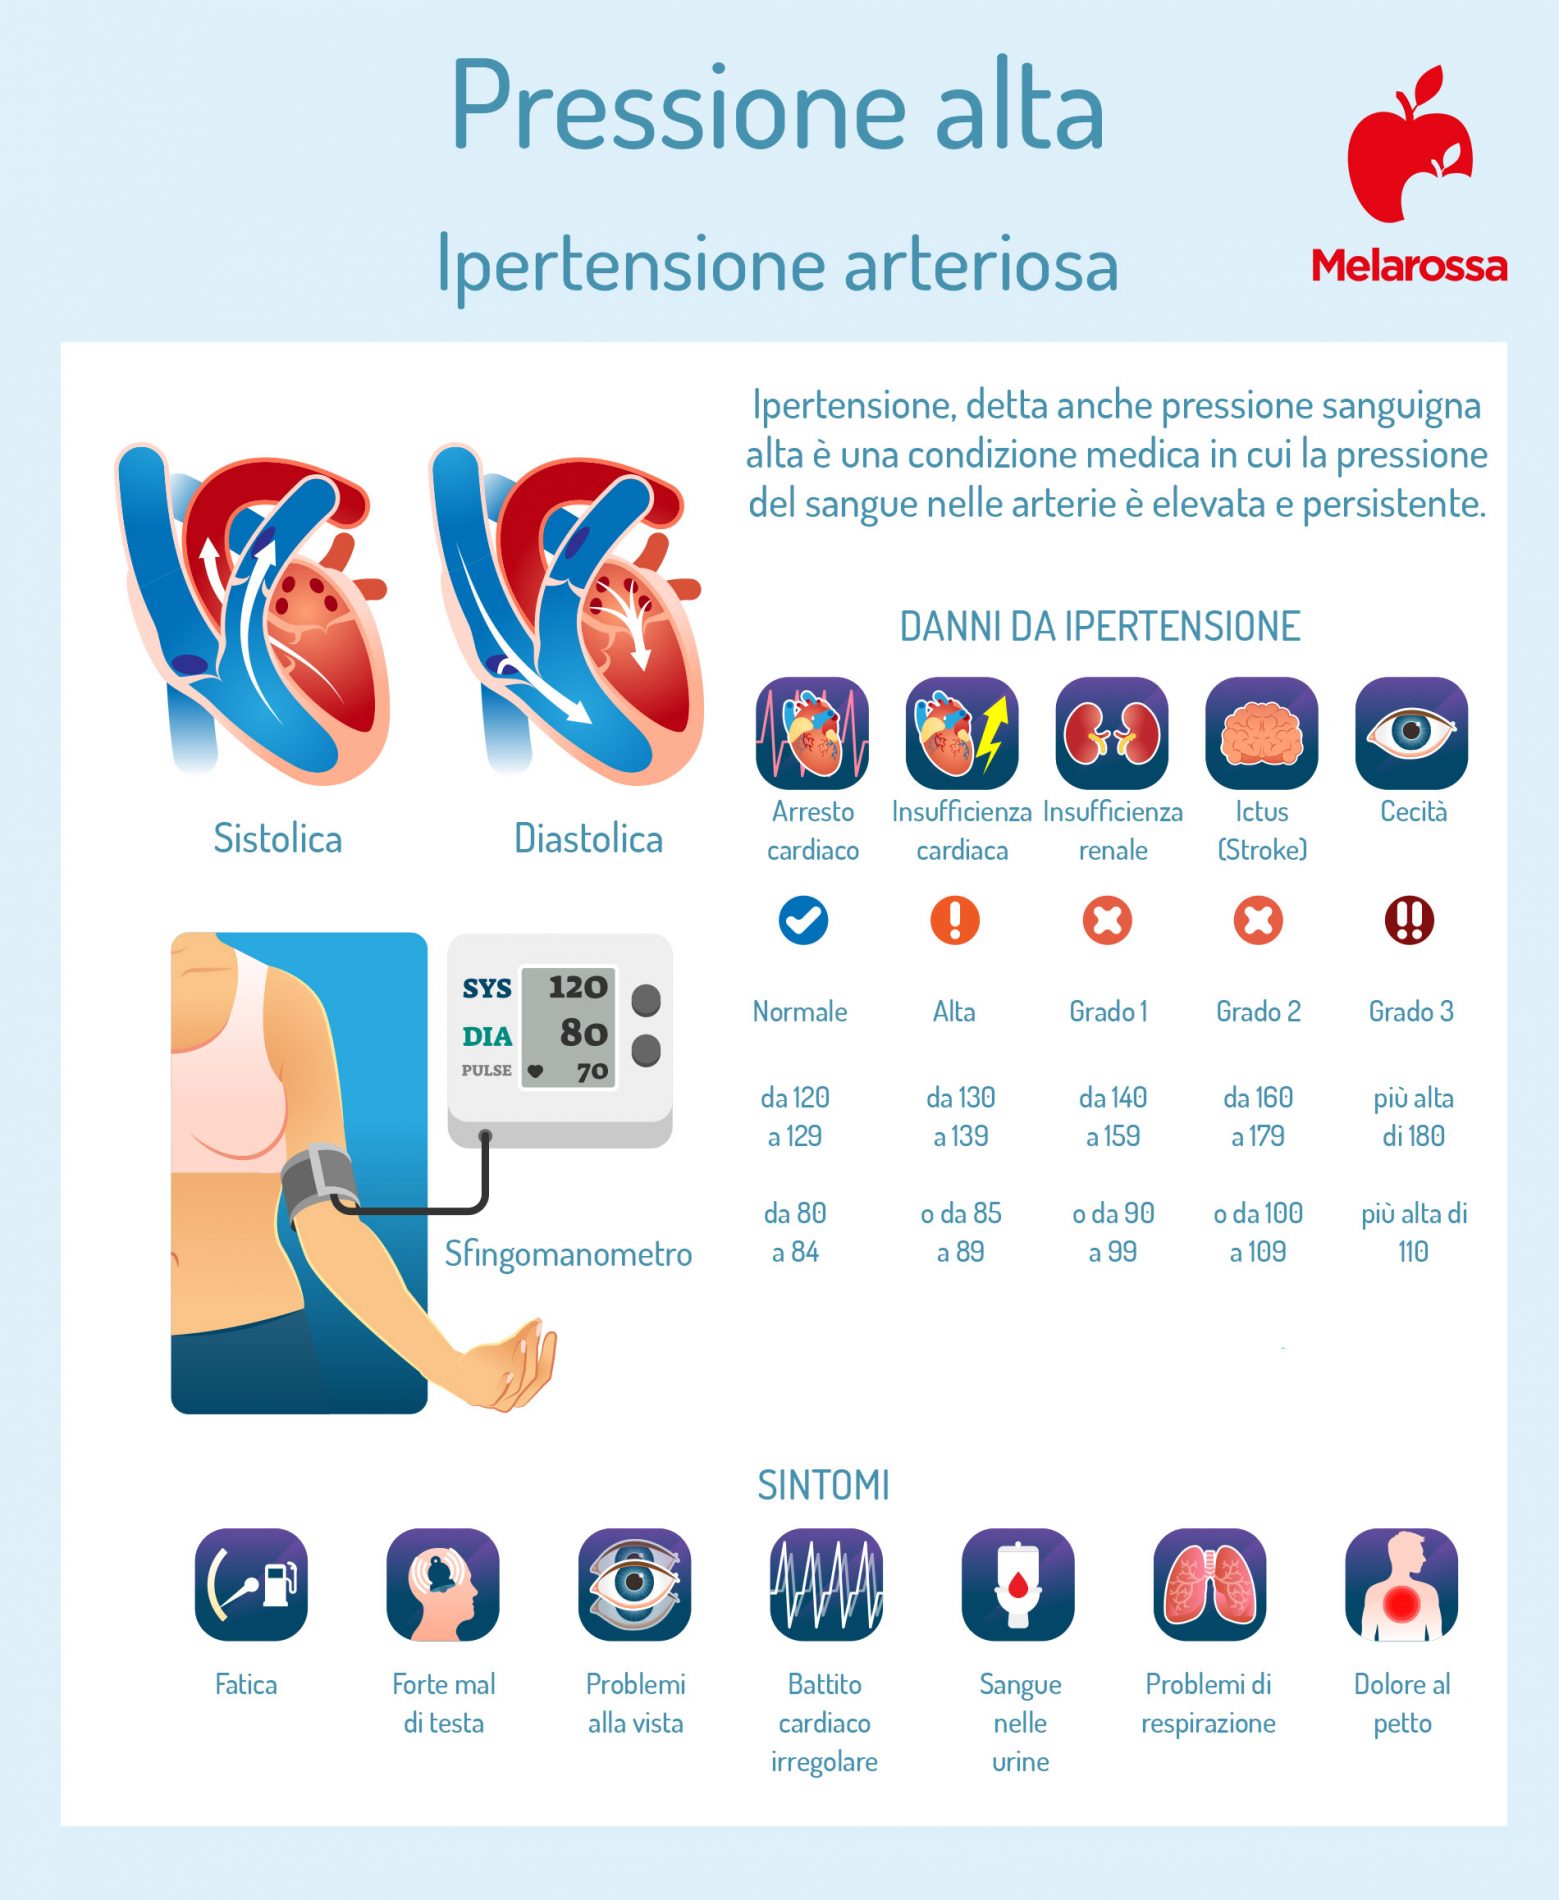 ipertensione arteriosa: come misurare la pressione 